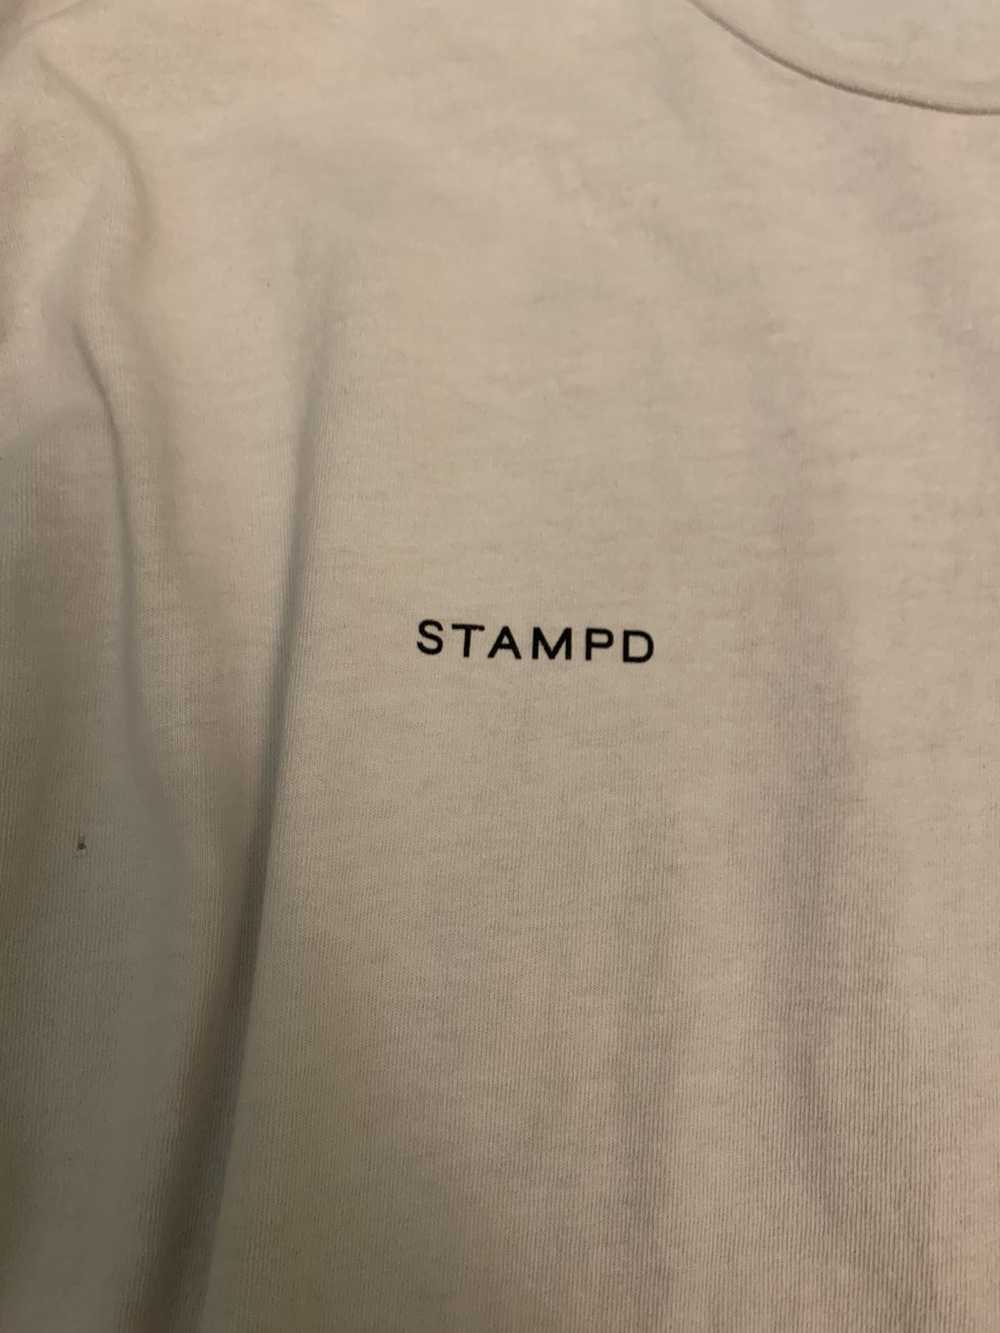 Stampd Stampd Long Sleeve T shirt - image 2